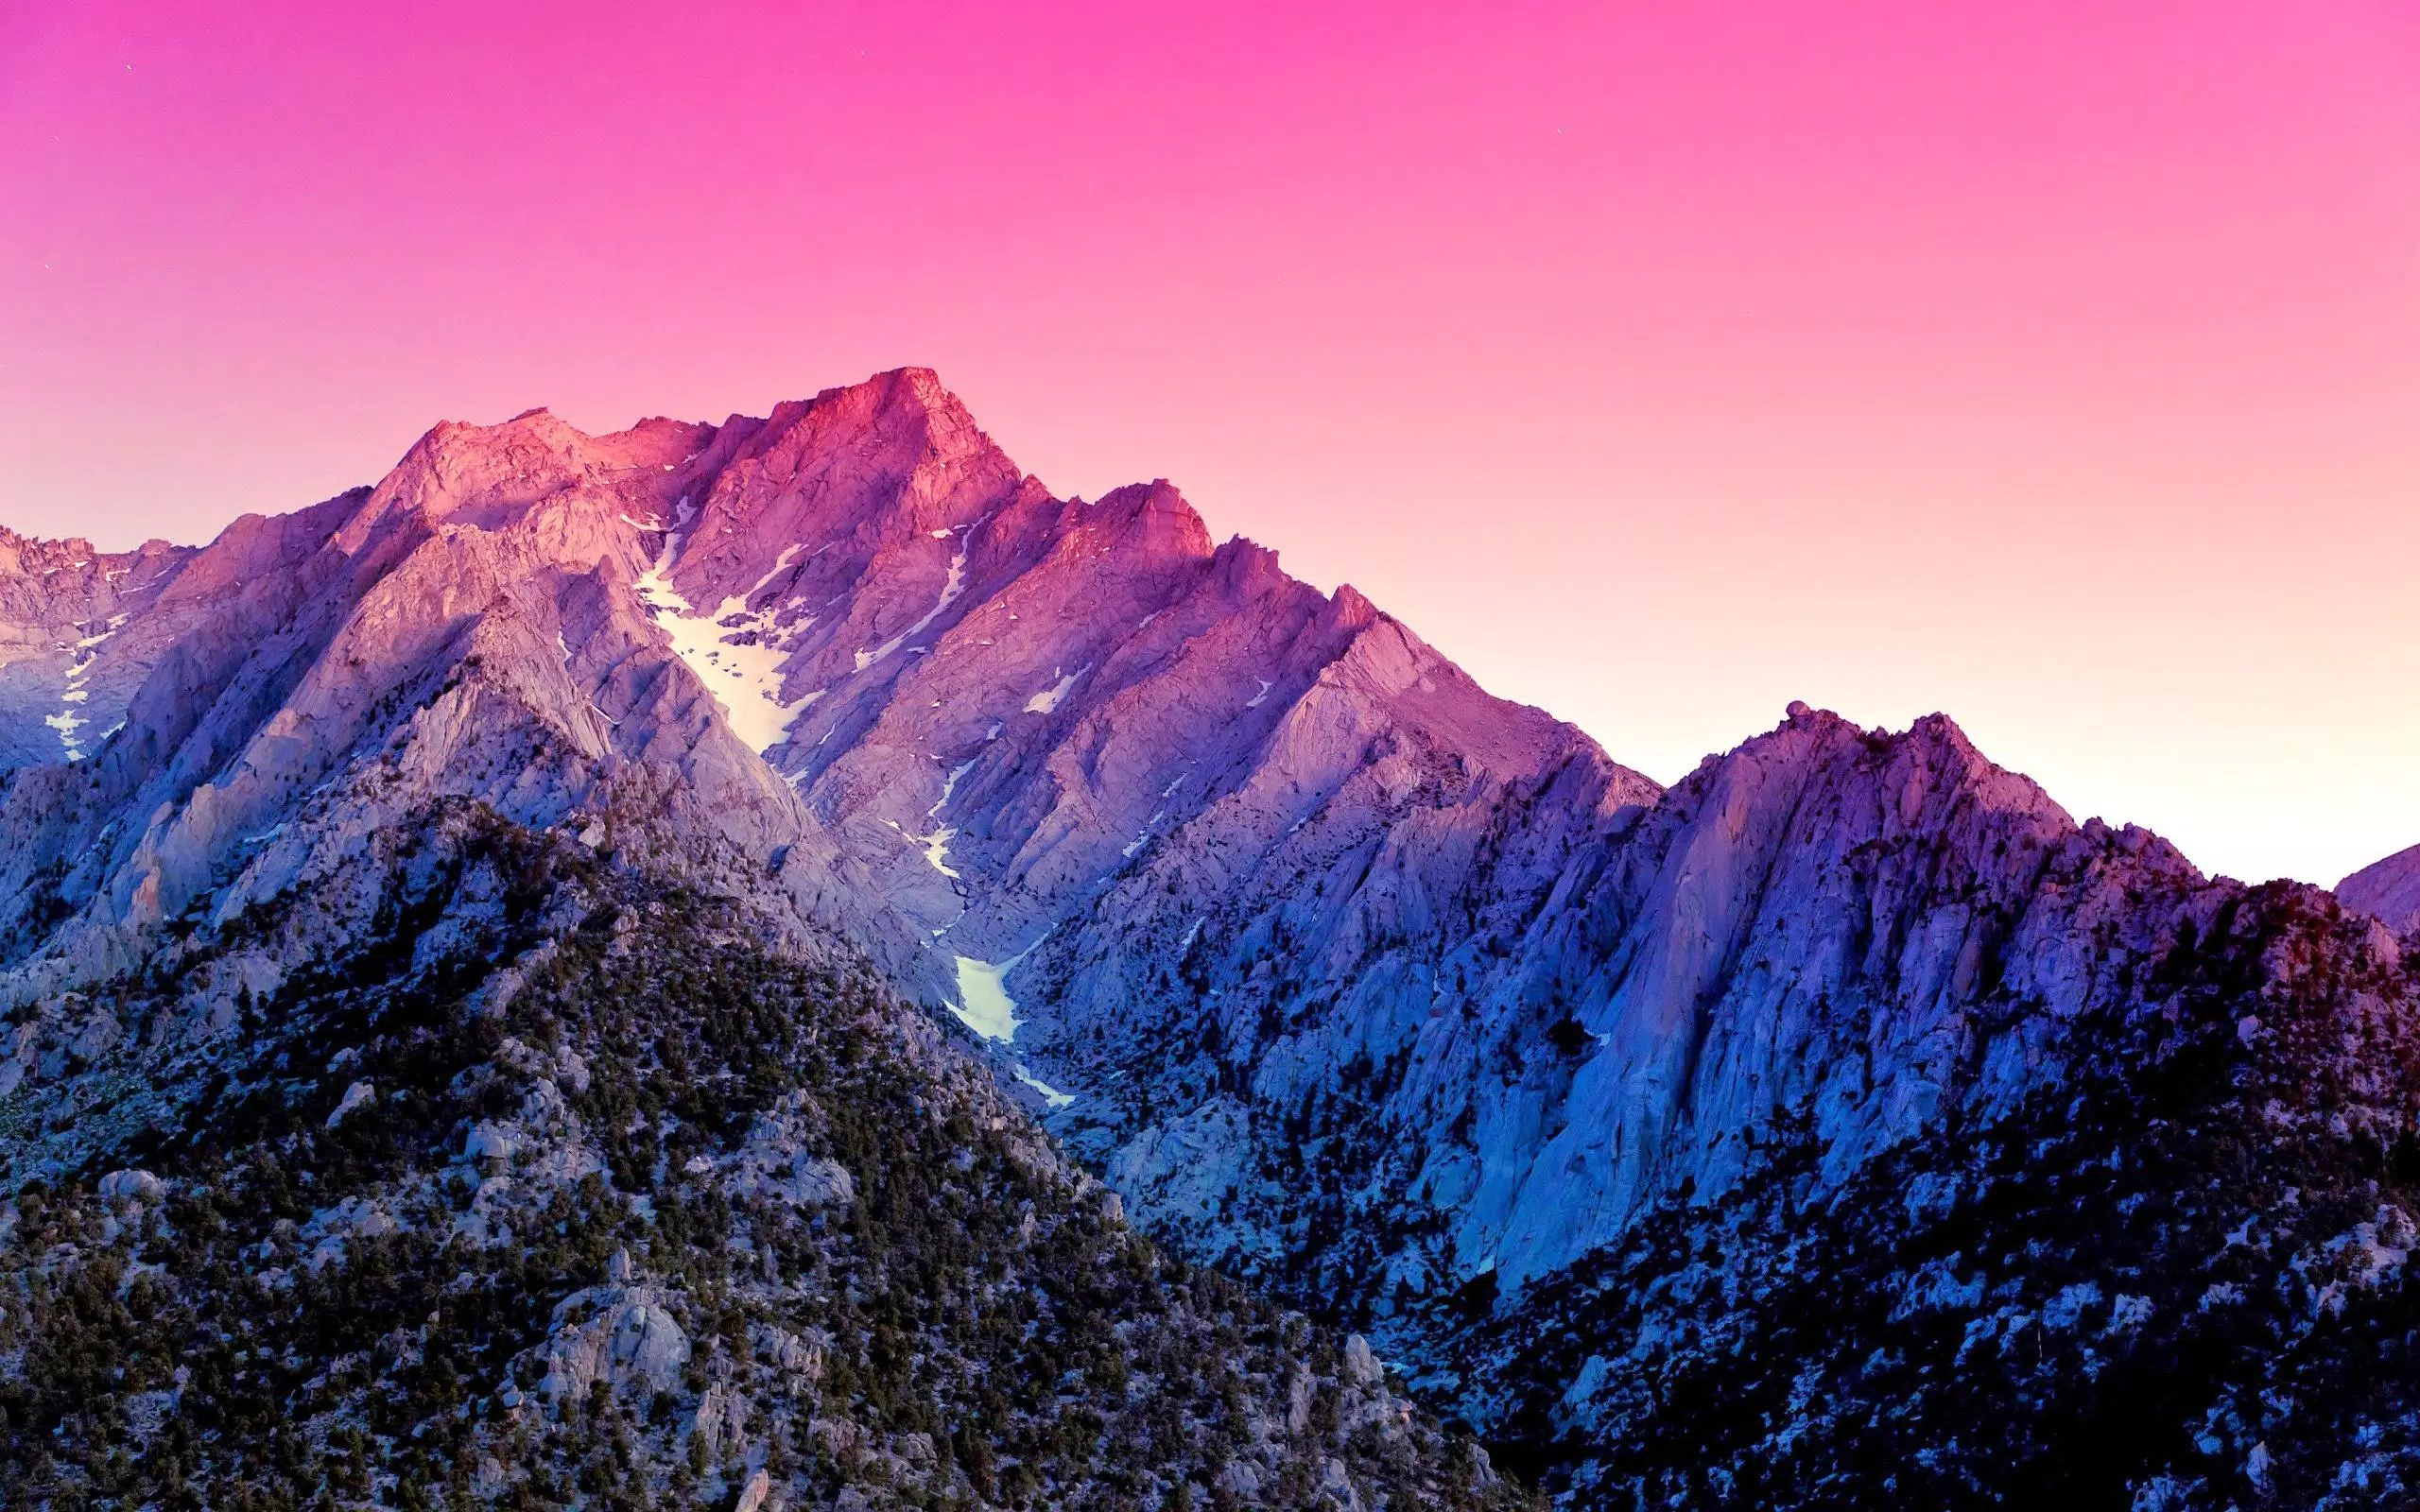 Mountain Wallpaper: Những bức ảnh tường núi đẹp mê hồn là lựa chọn hoàn hảo để tạo ra một không gian sống động và đầy cảm hứng. Tận hưởng sự yên tĩnh và thanh bình của thiên nhiên, và cảm nhận được vẻ đẹp của các ngọn núi bạt ngàn chẳng hạn như Himalaya hay Rocky Mountain.